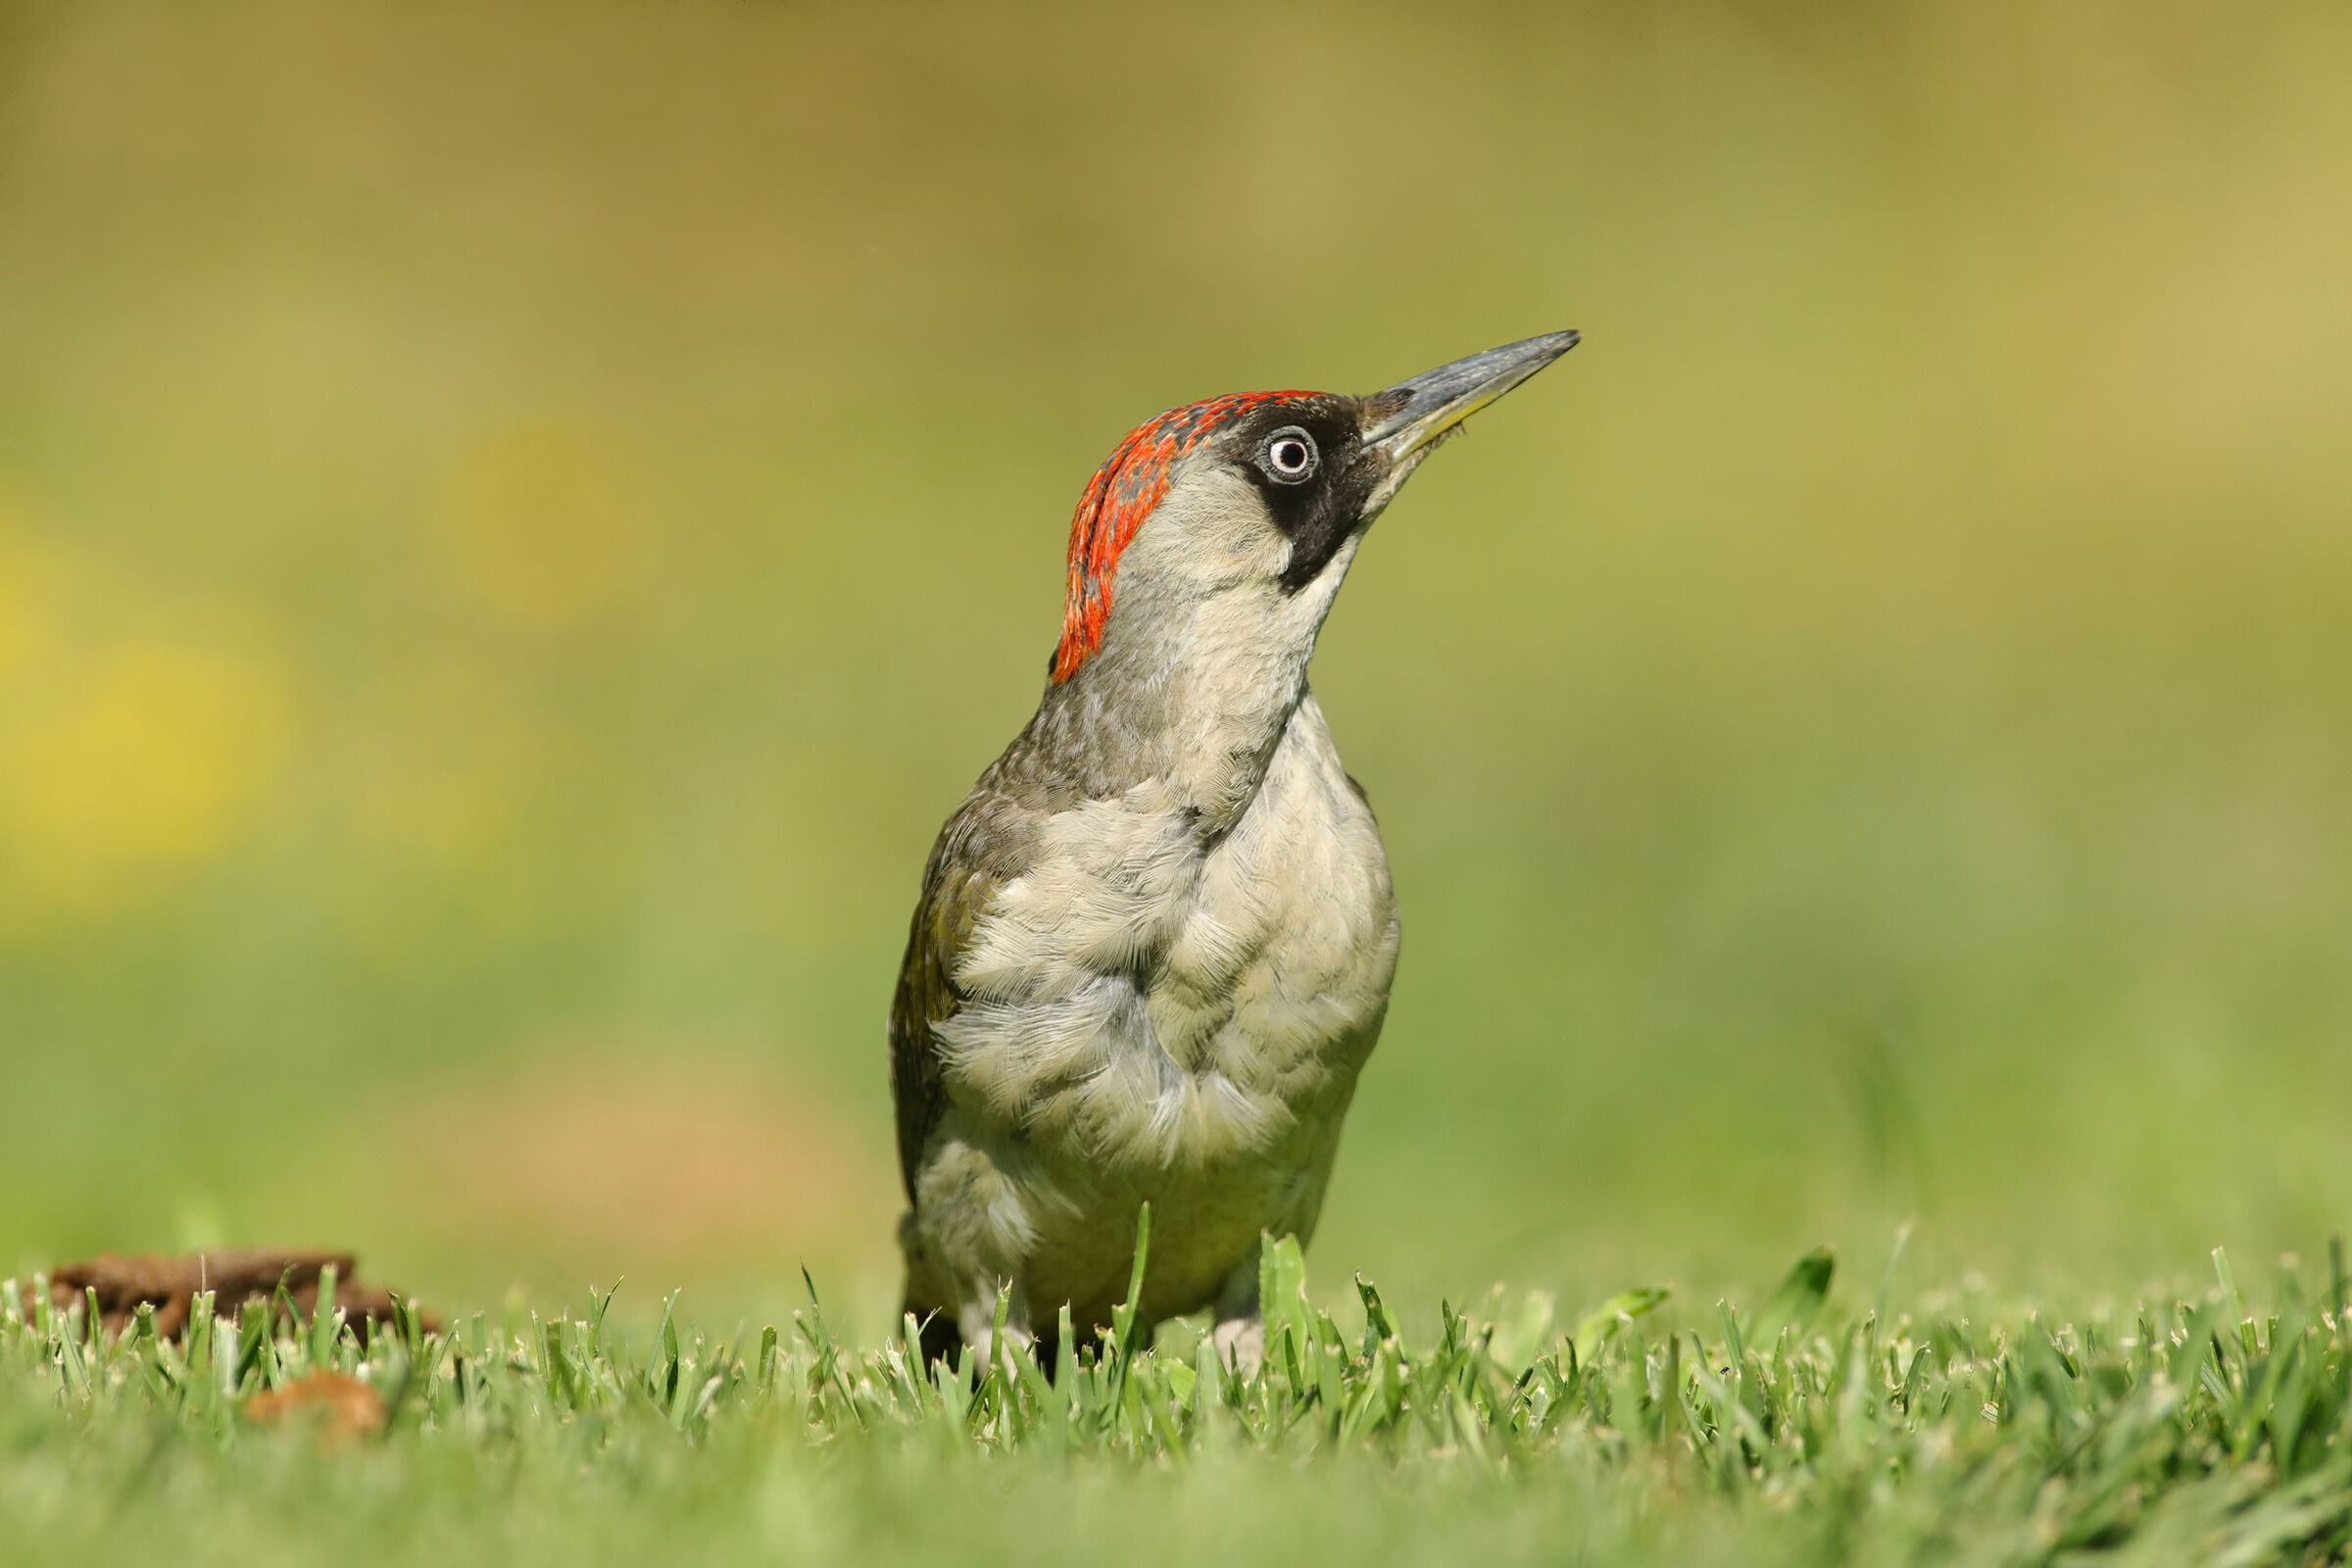 female green woodpecker...